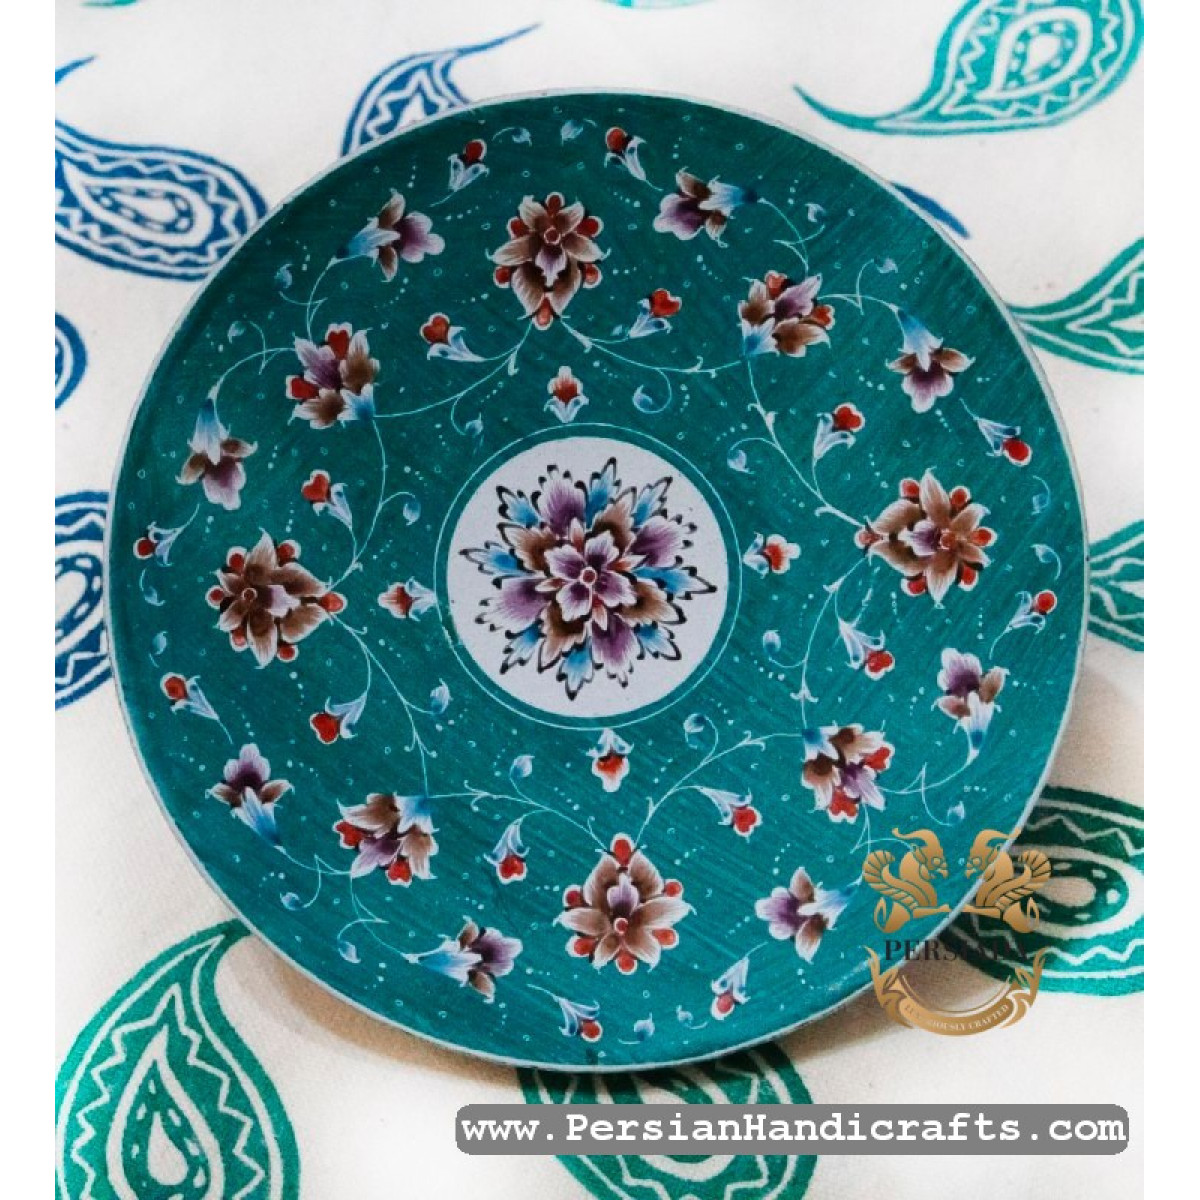 Wall Plate | Hand Painted Minakari | PHE2106-Persian Handicrafts